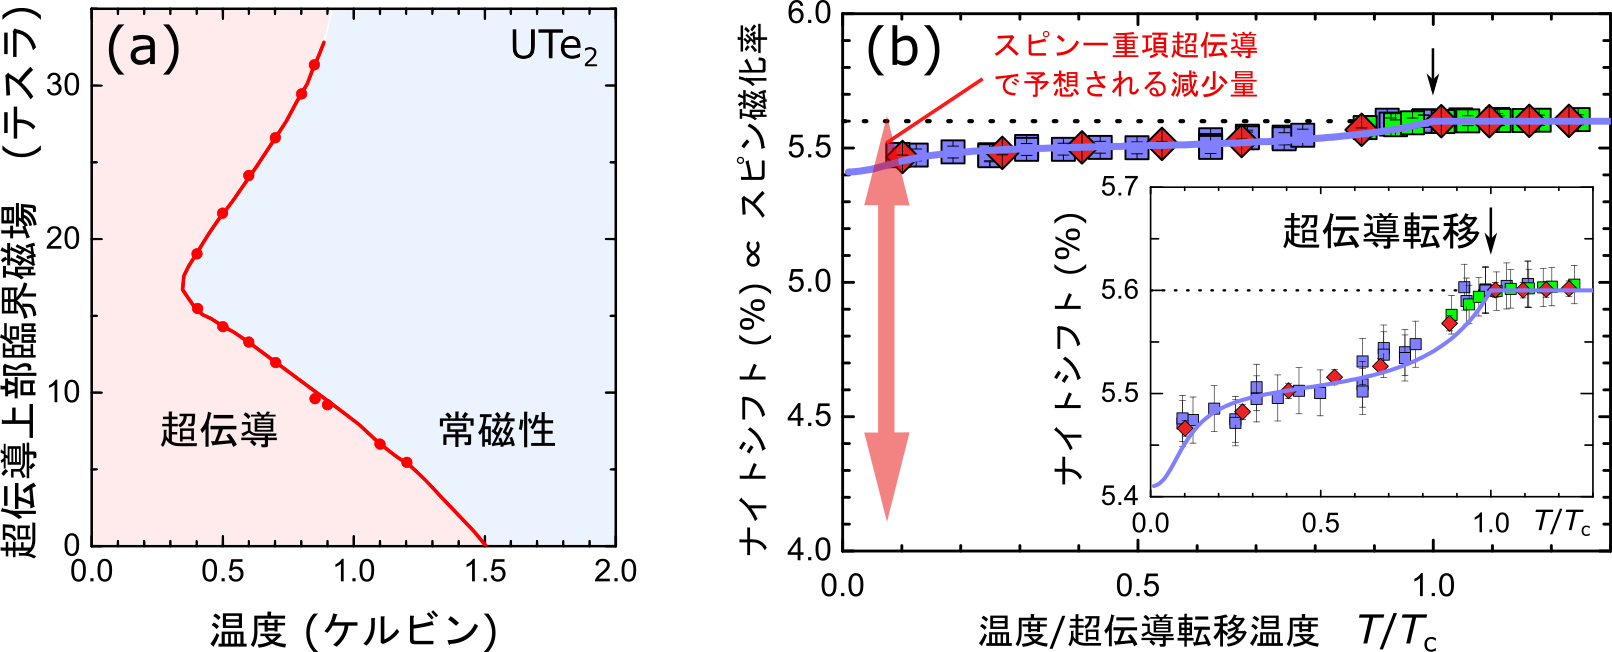 UTe2の図1